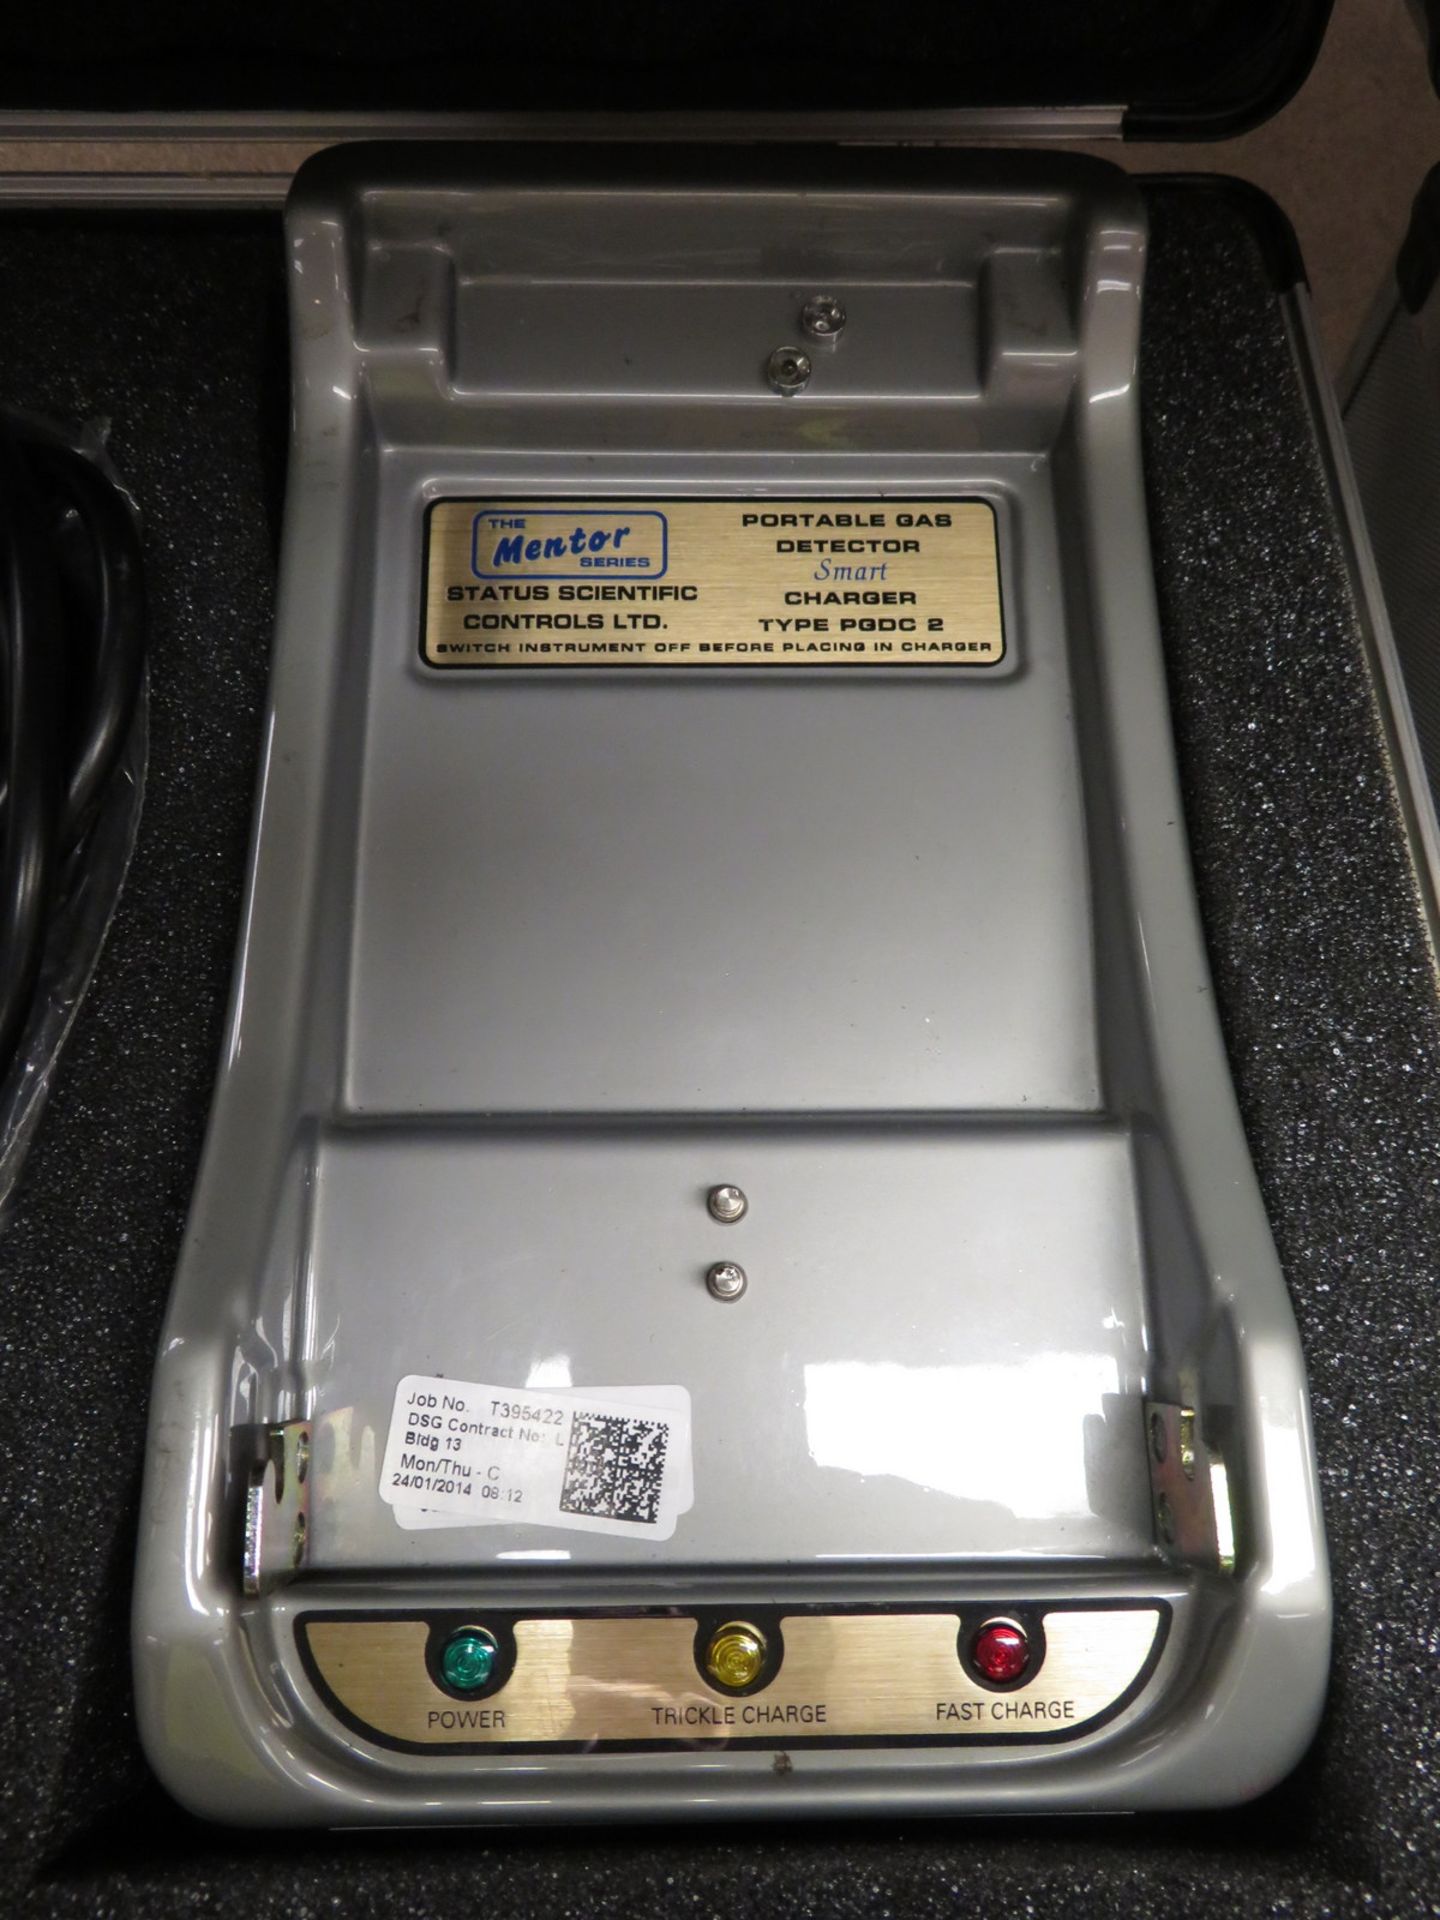 Status Scientific PGD2 portable gas detector set - Image 4 of 5